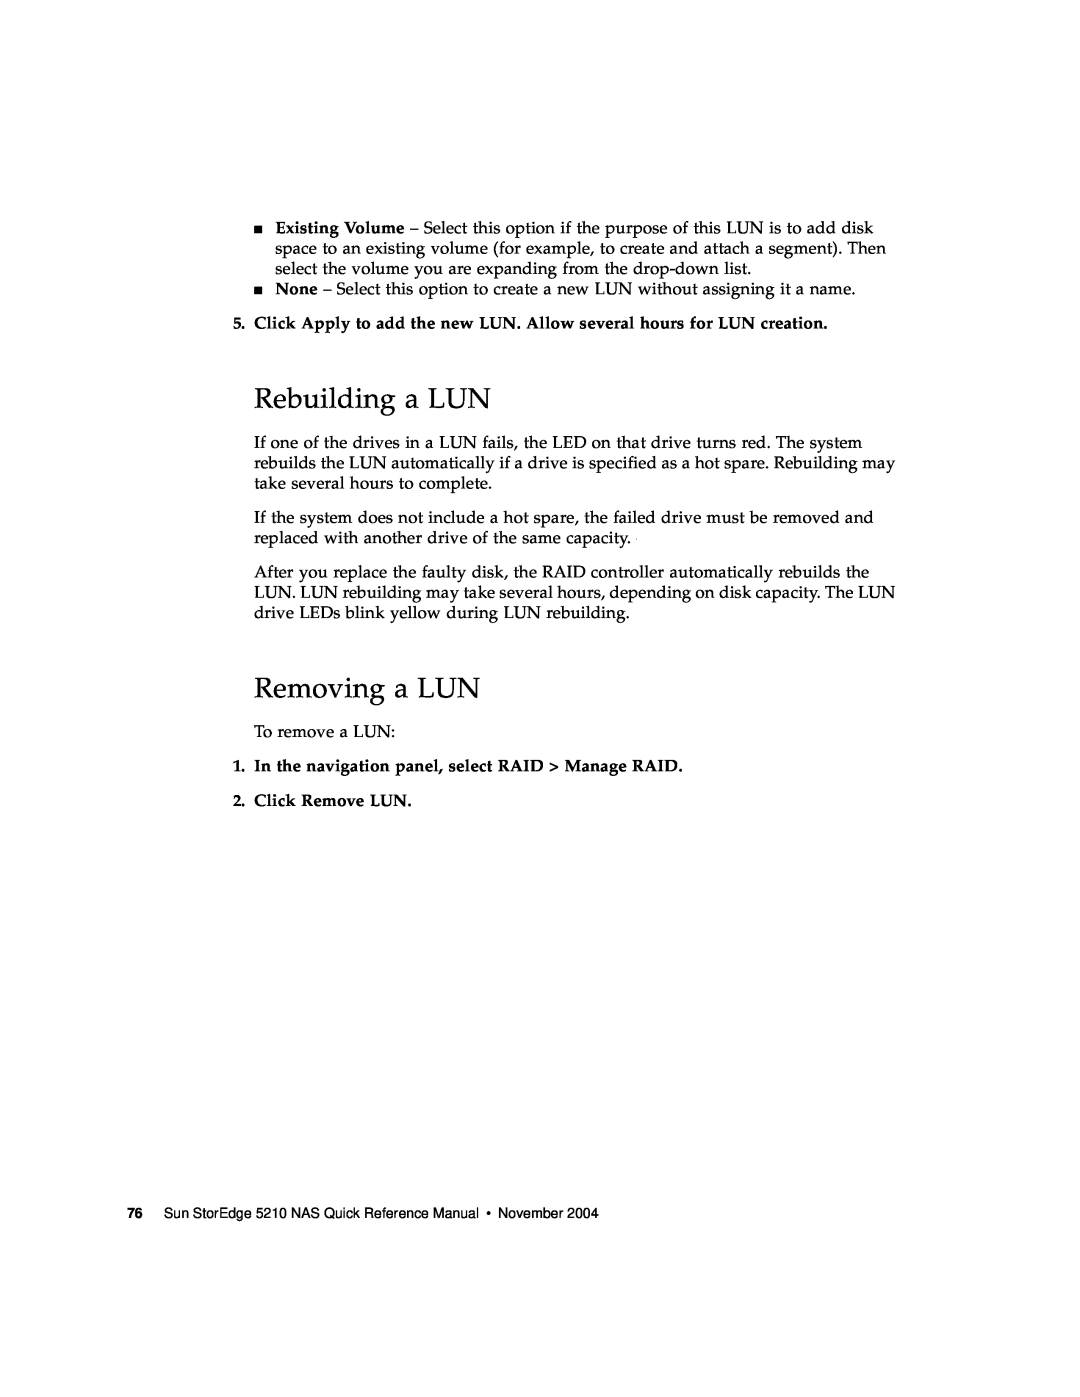 Sun Microsystems 5210 NAS manual Rebuilding a LUN, Removing a LUN 